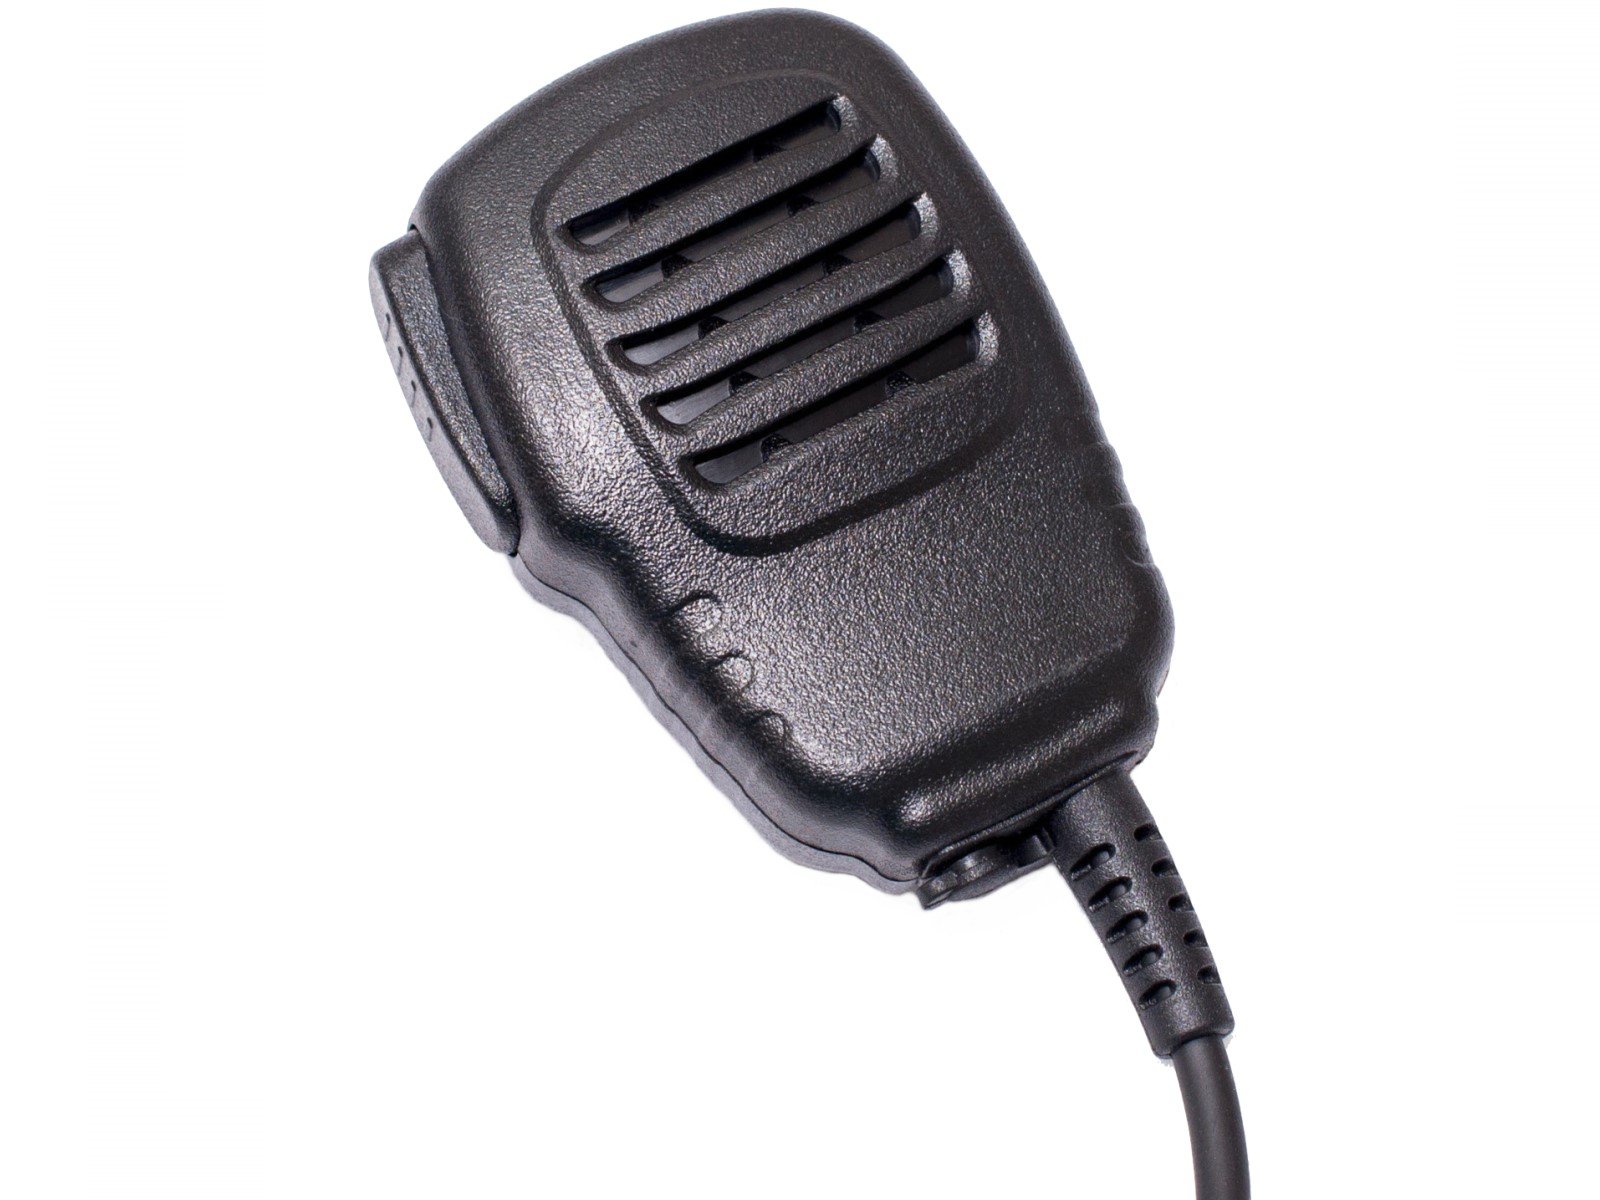 Lautsprechermikrofon leicht HM150-PH01